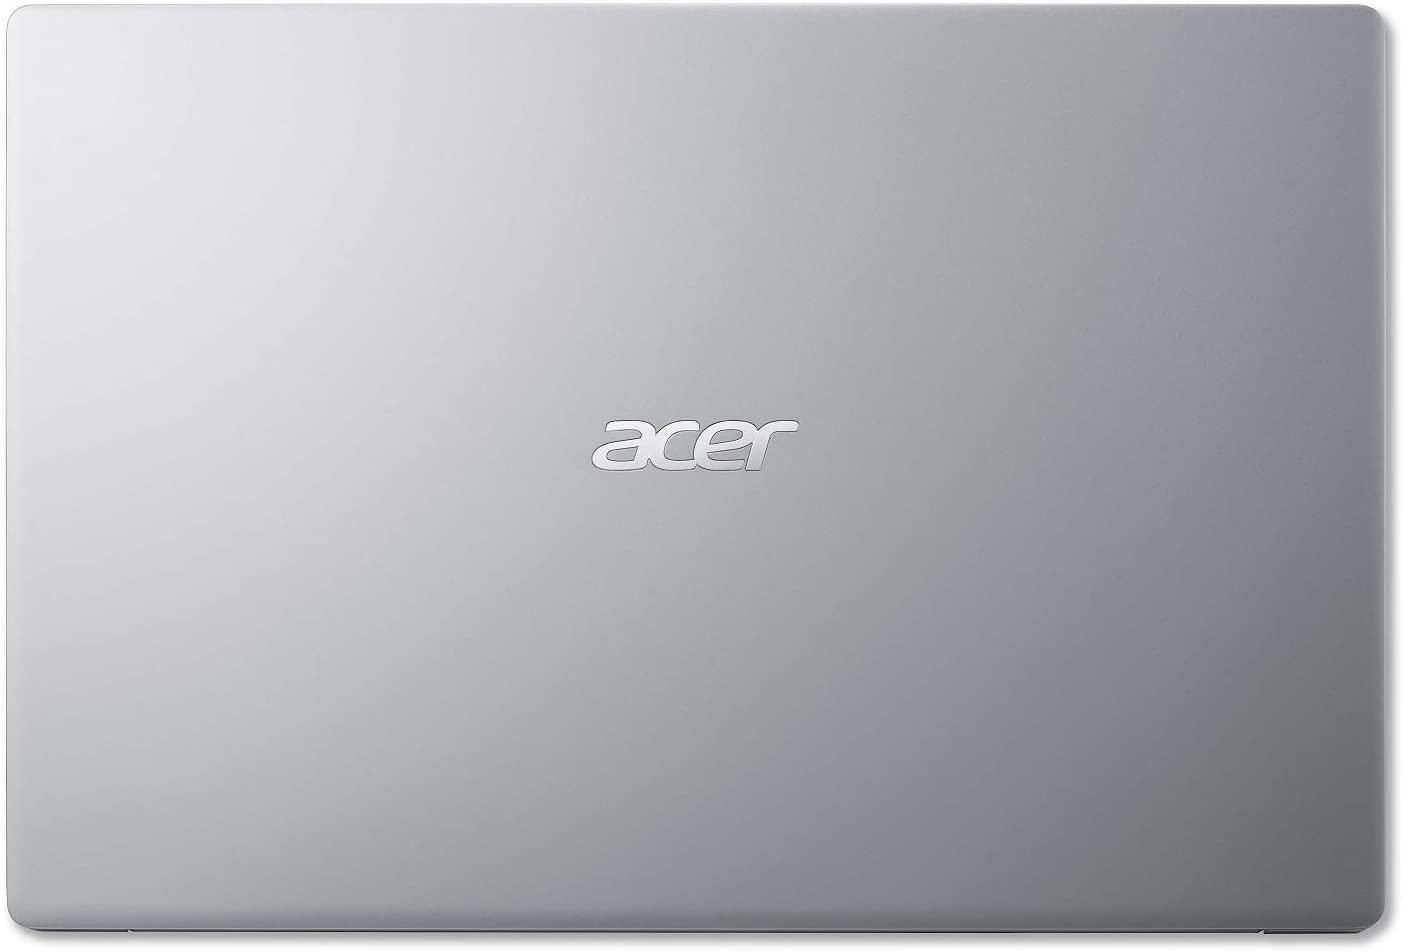 Acer Swift 3 - Computadora portátil delgada y ligera, 14 pulgadas, alta  definición, IPS, AMD Ryzen 7 4700U Octa-Core con gráficos Radeon, 8GB  LPDDR4